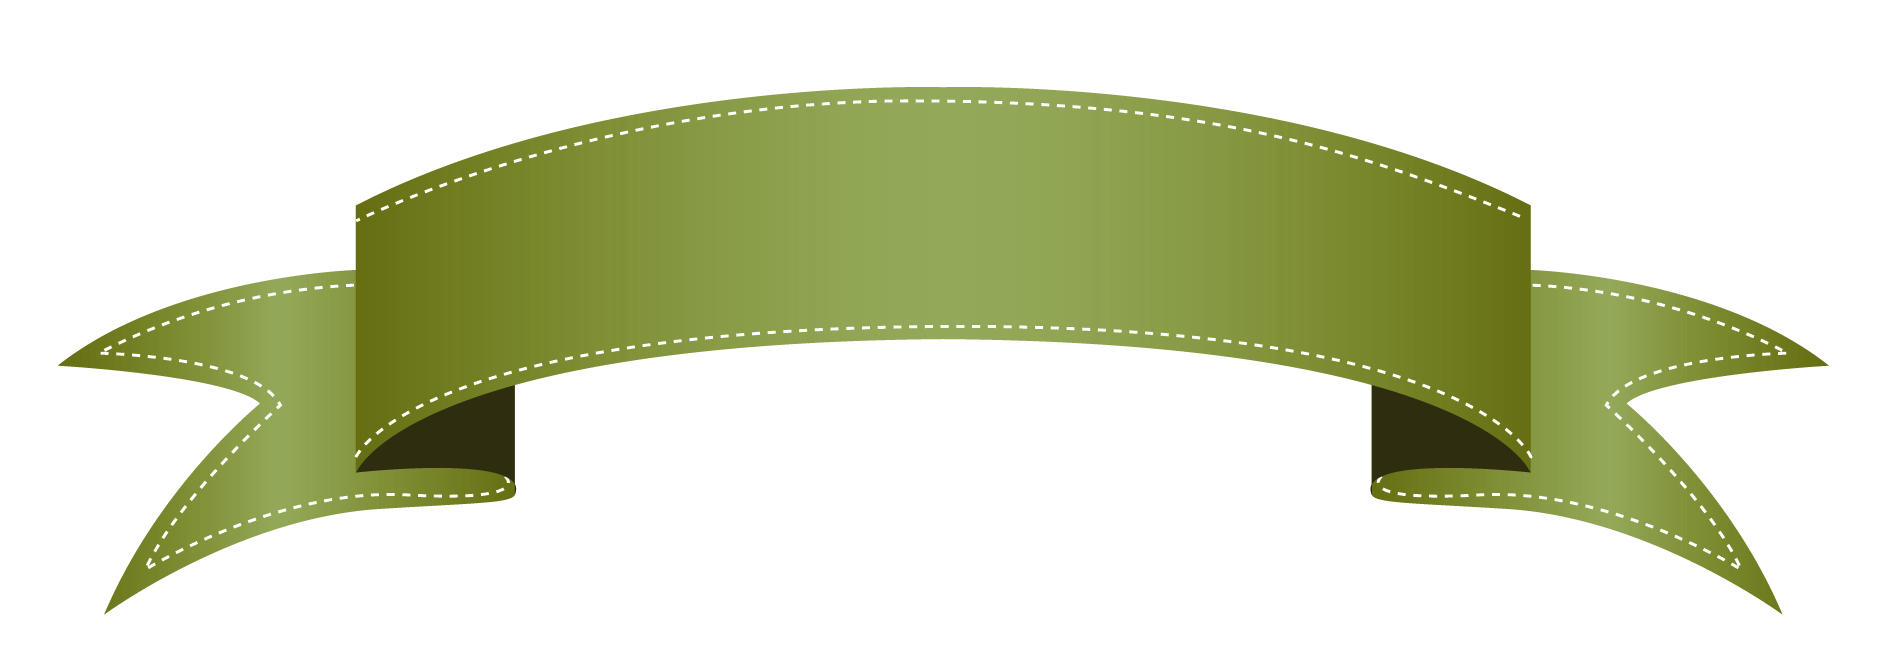 Green transparent banner clipart